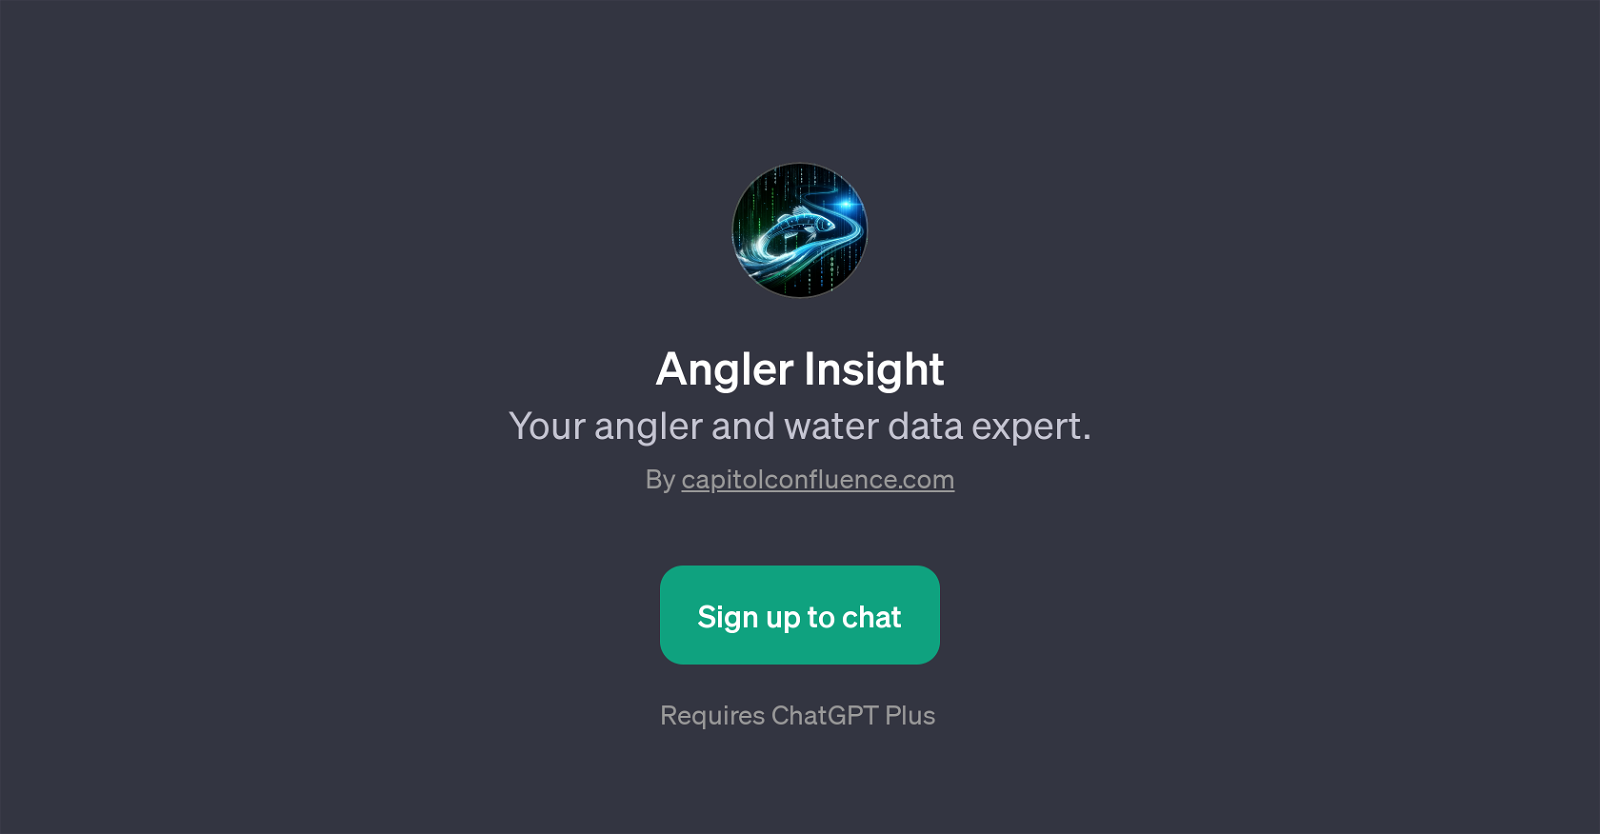 Angler Insight website